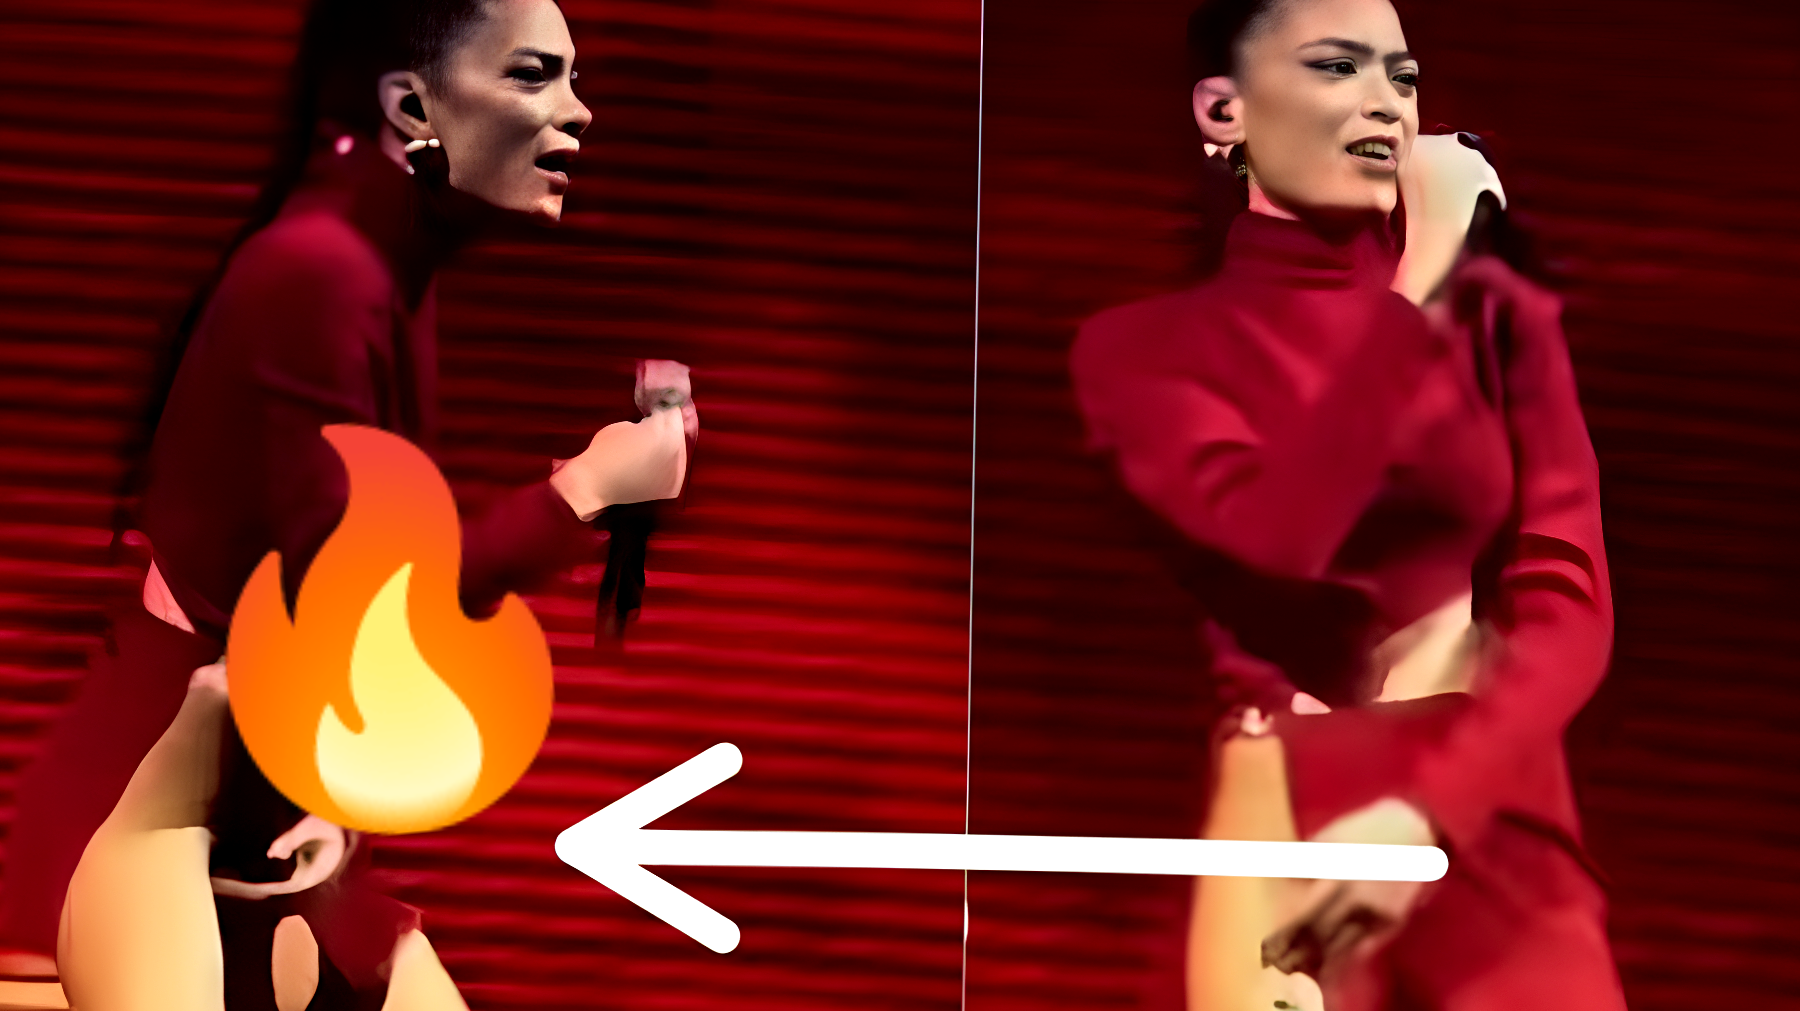 Elodie si svela come Laura Pausini: fa una rivelazione hot sul palco - VIDEO